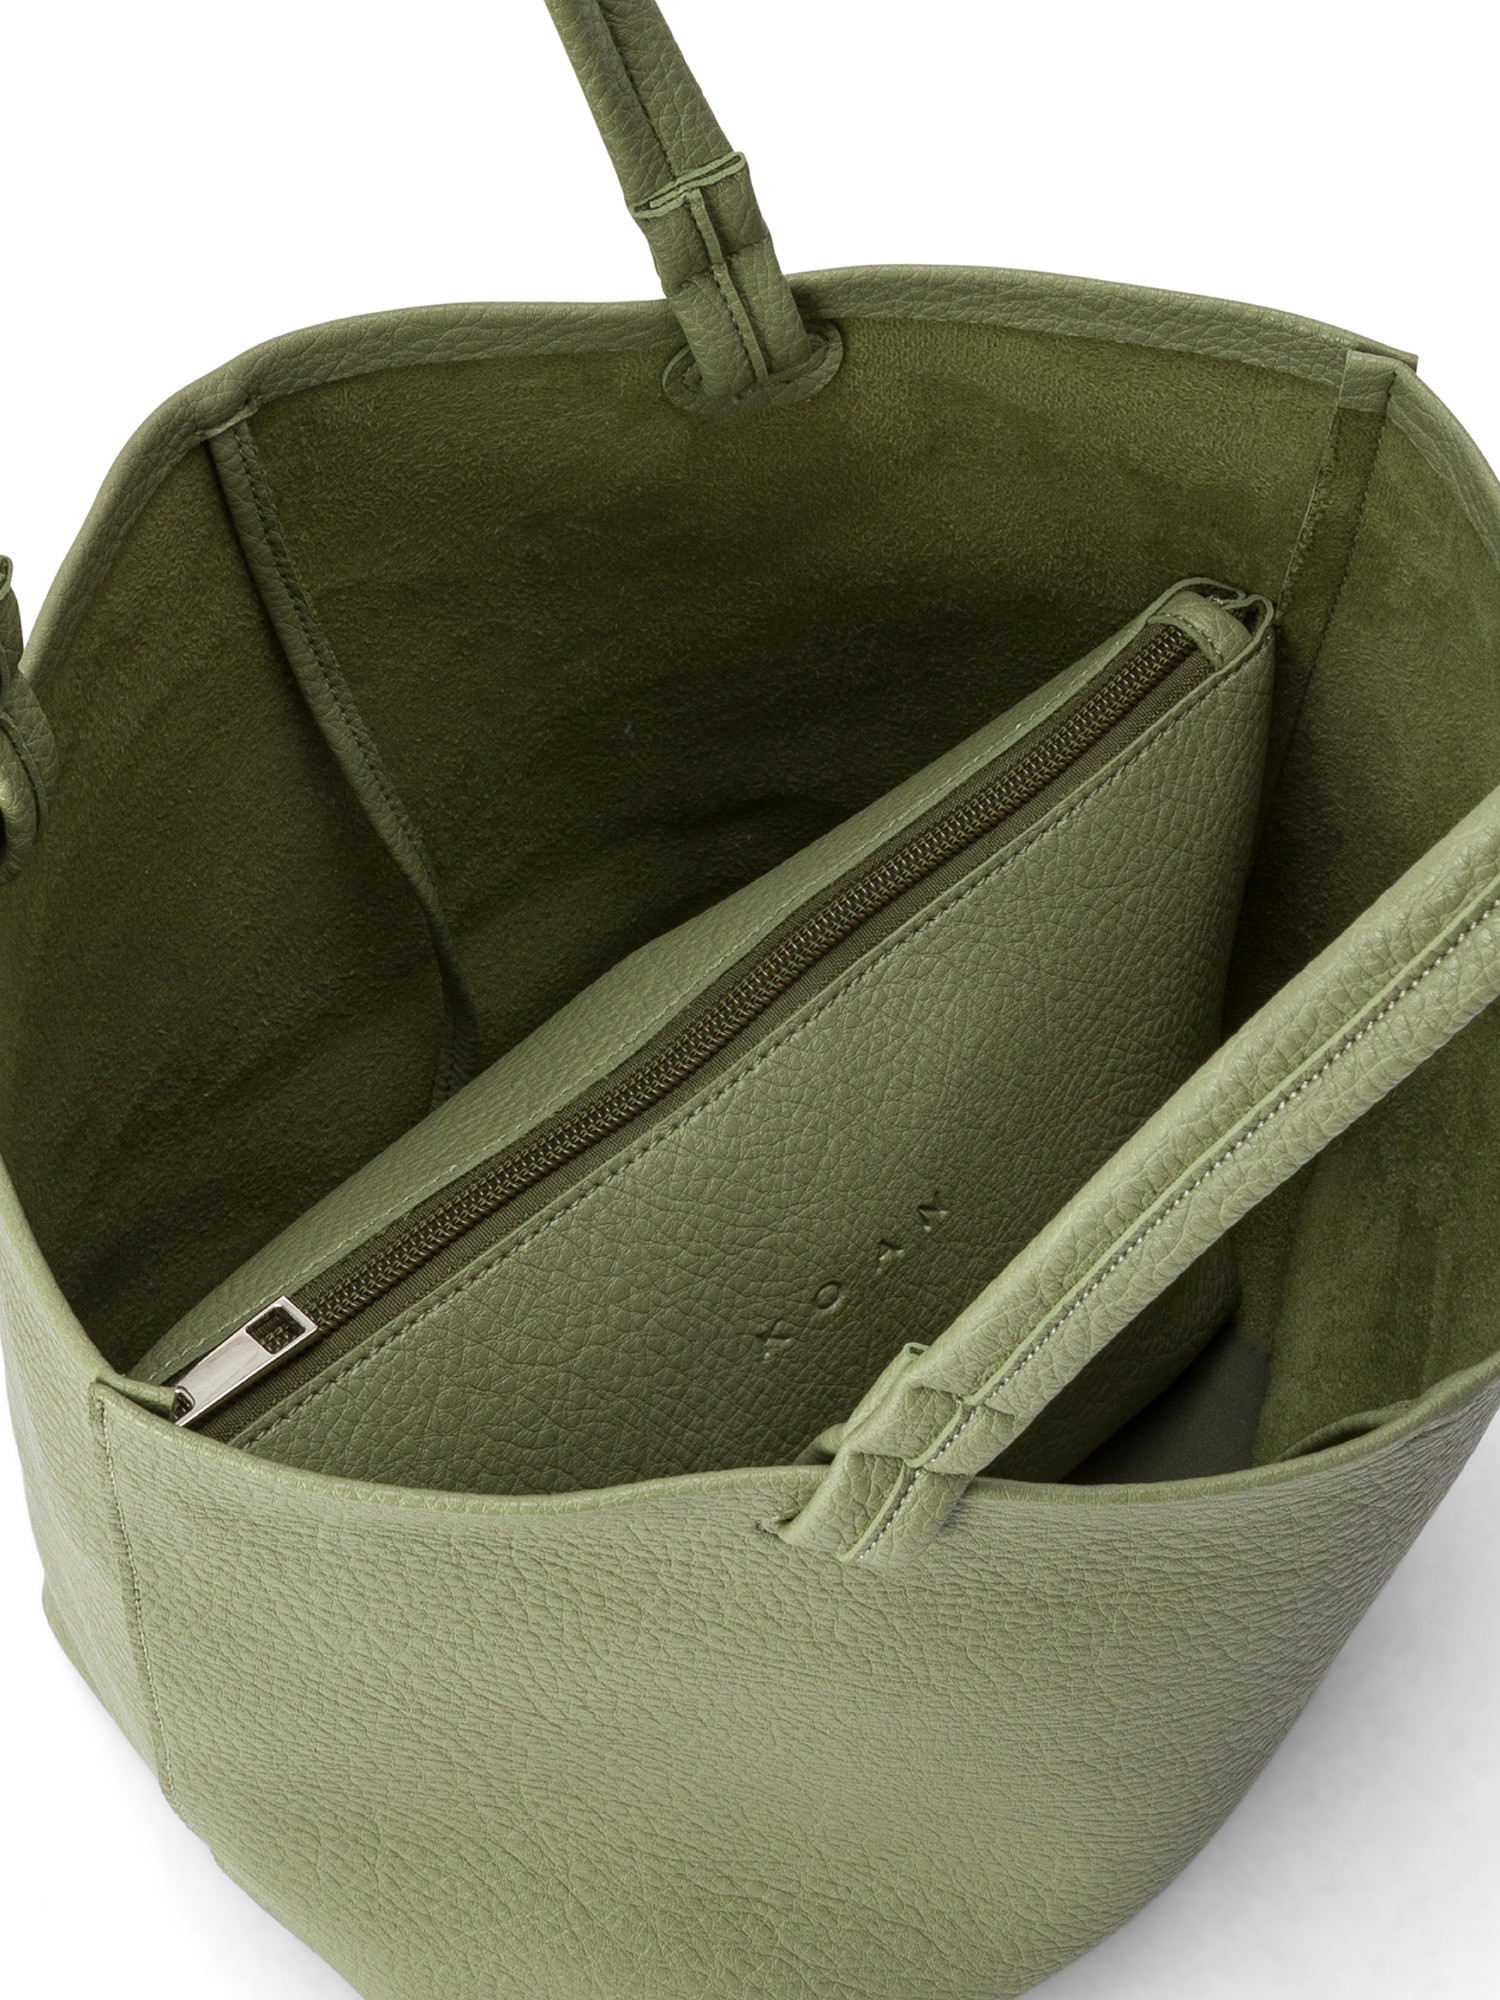 Koan - Shopping bag, Green, large image number 2